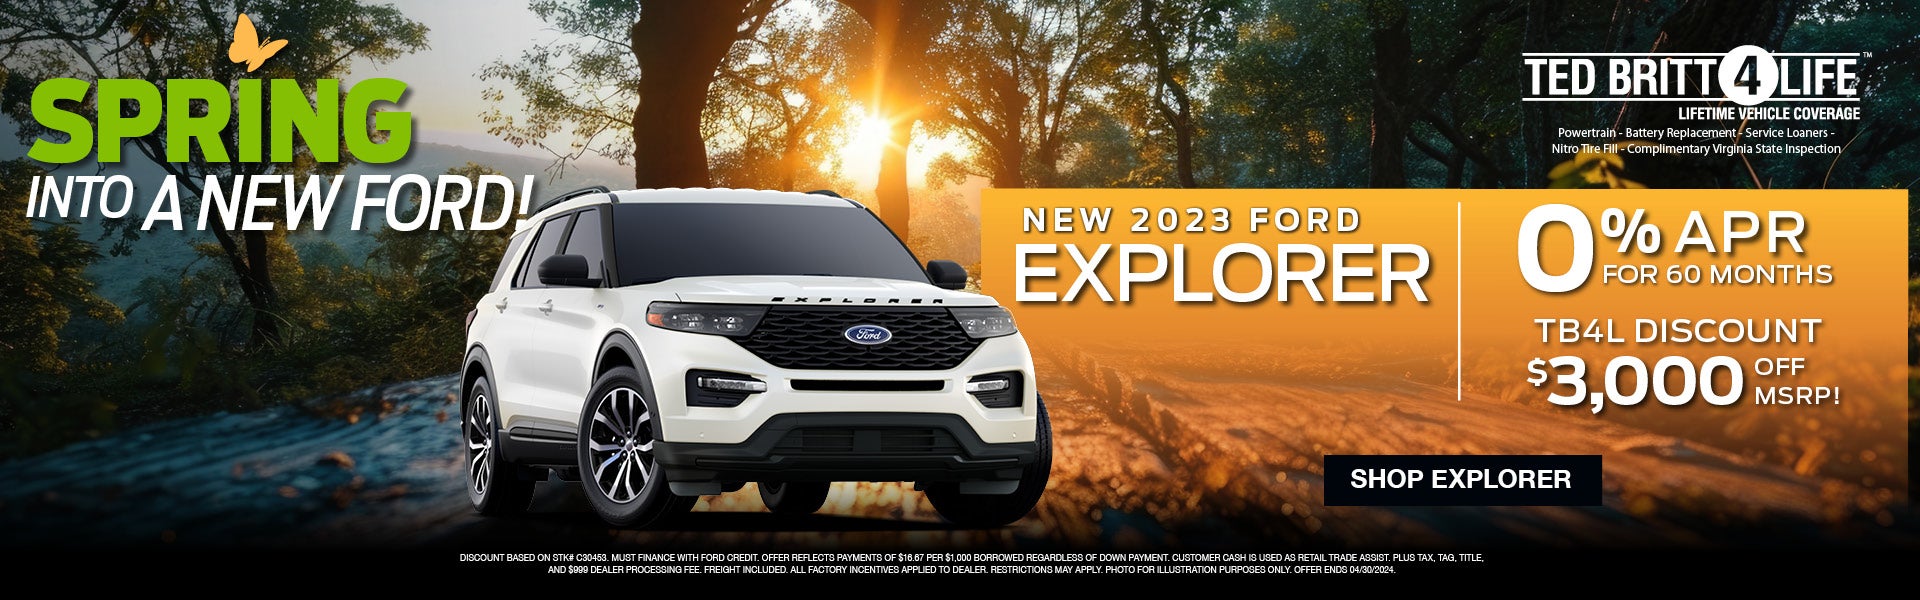 new 2023 ford explorer